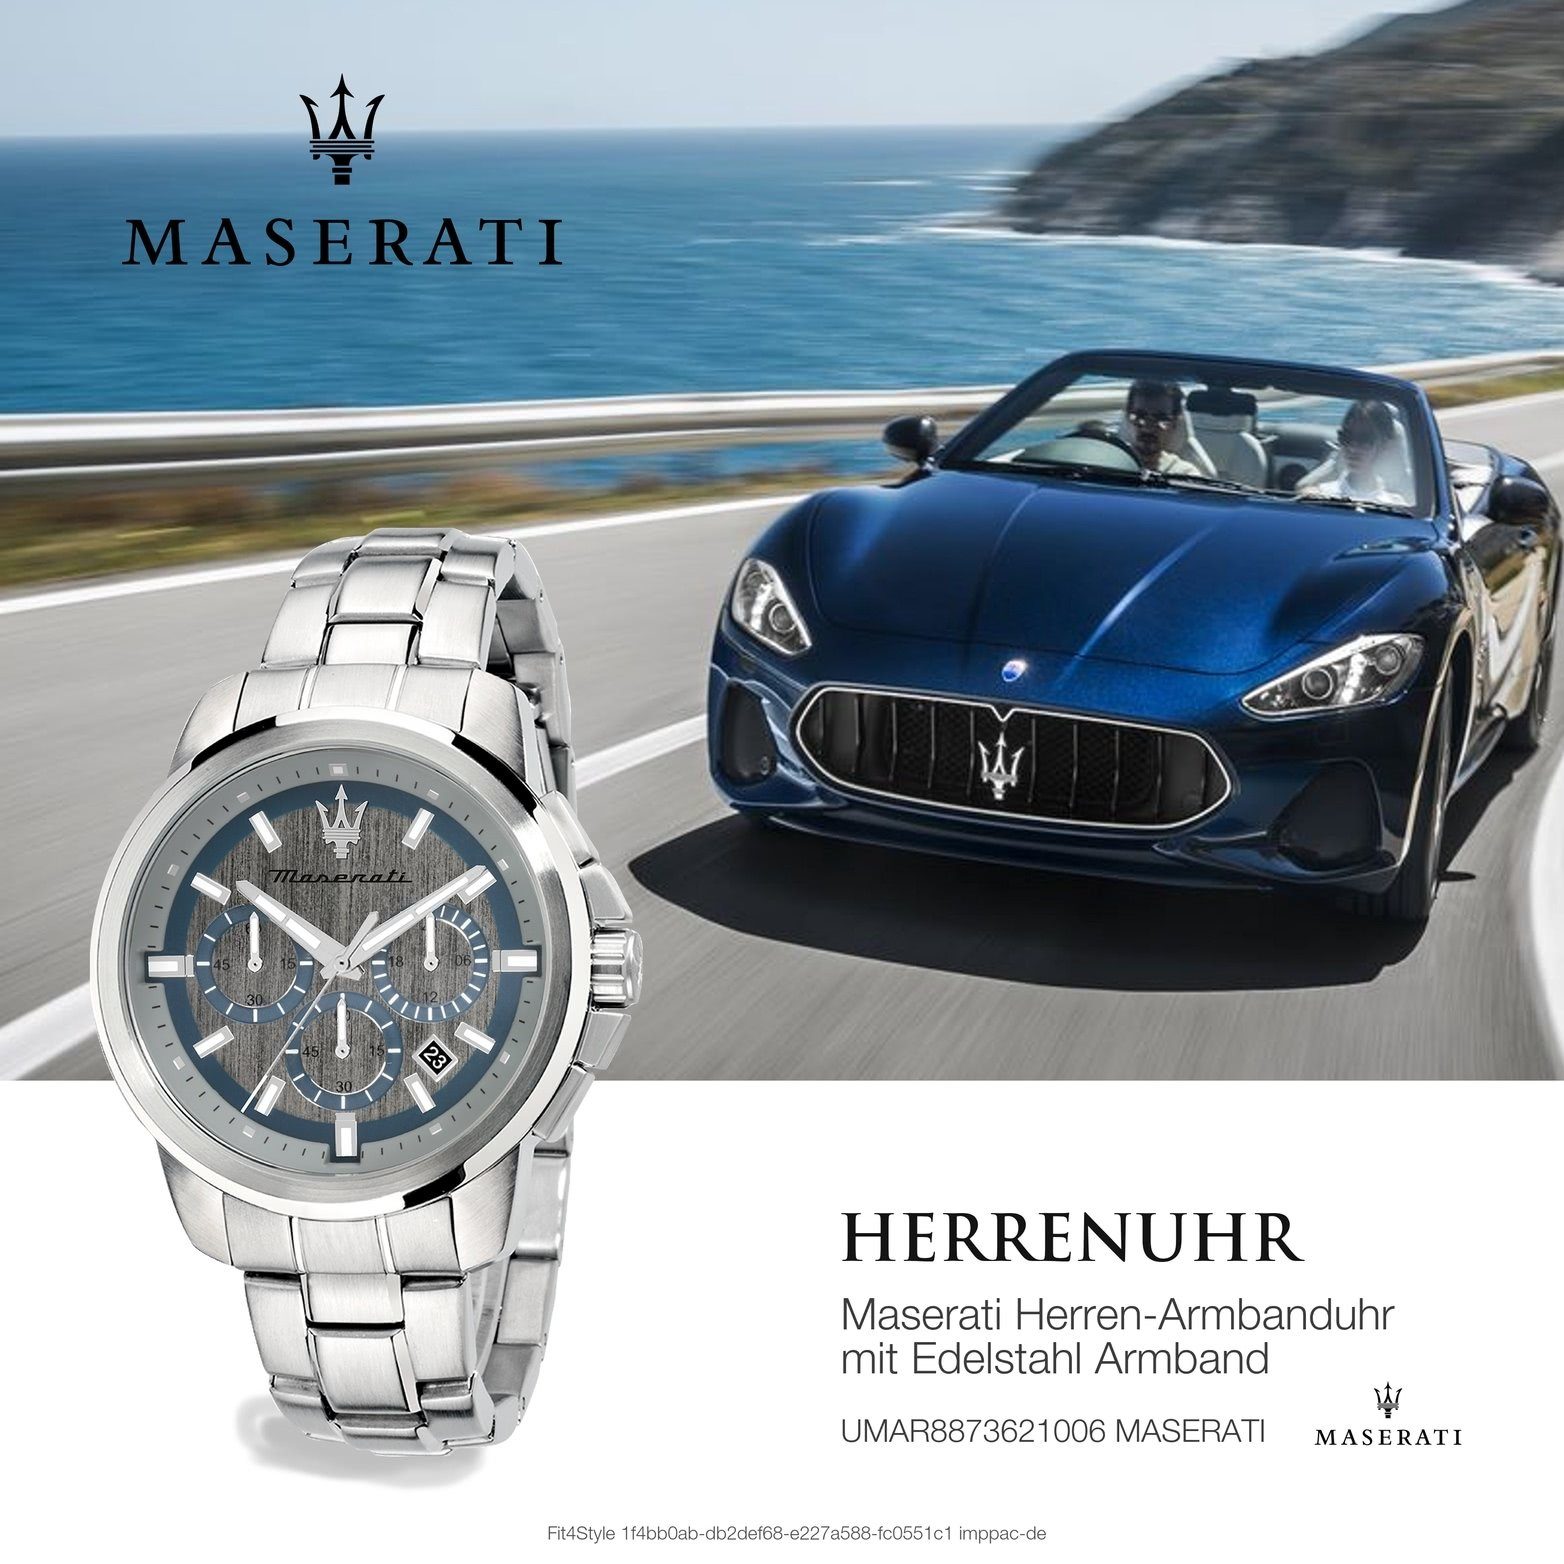 Armband-Uhr, Edelstahlarmband, groß (ca. 52x44mm) Maserati Chronograph Herrenuhr MASERATI Edelstahl rundes silber Gehäuse,